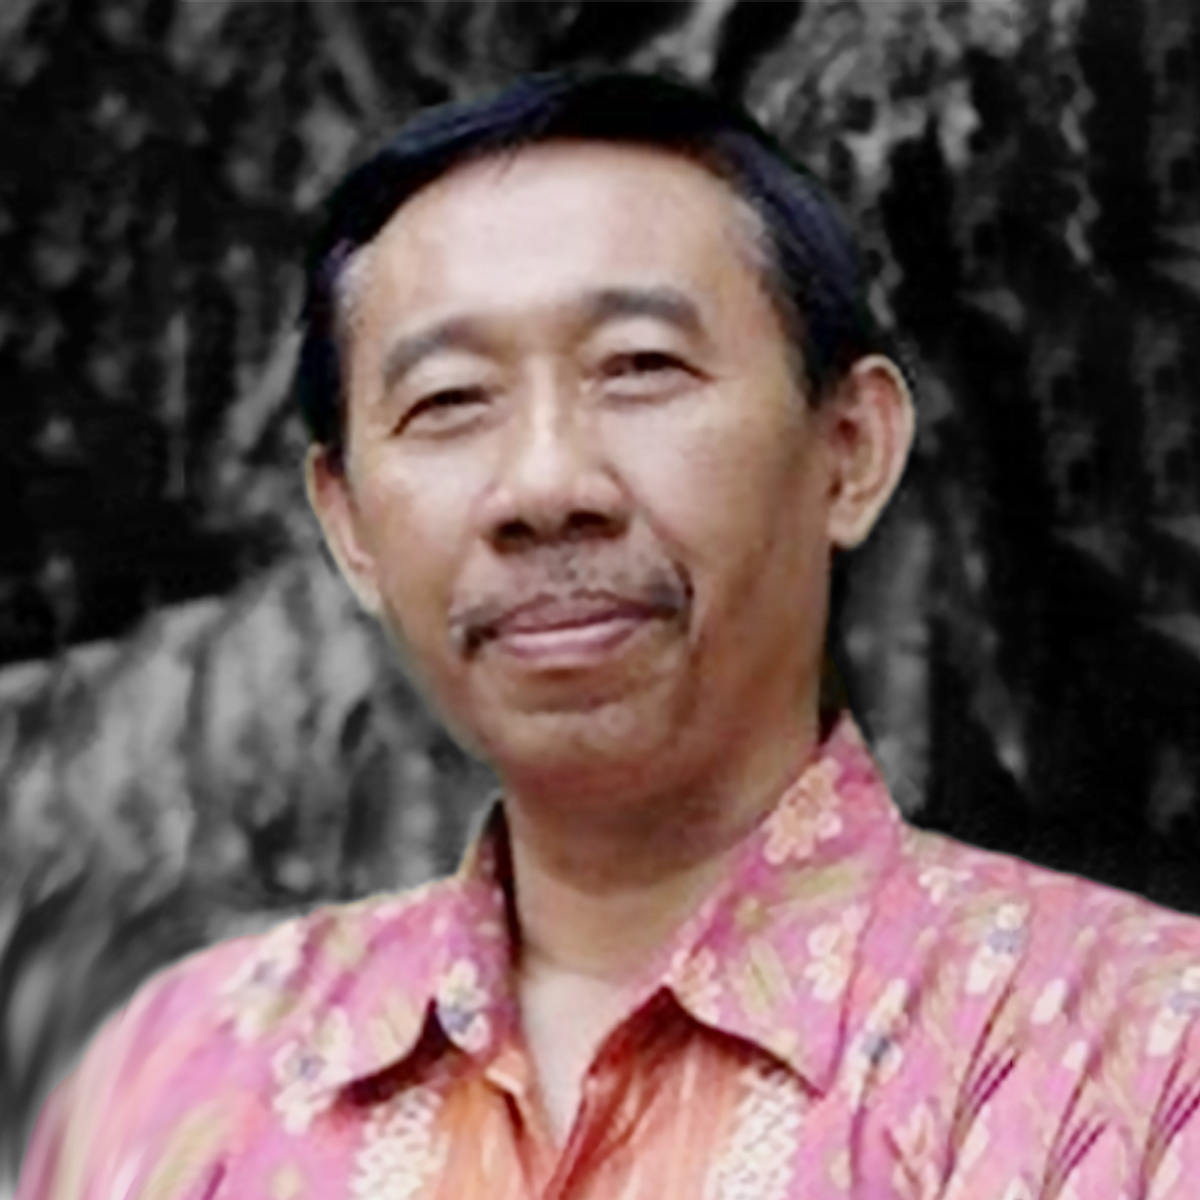 PP Dosen Prof., Dr. Agus Pramusinto, MDA. 2.1